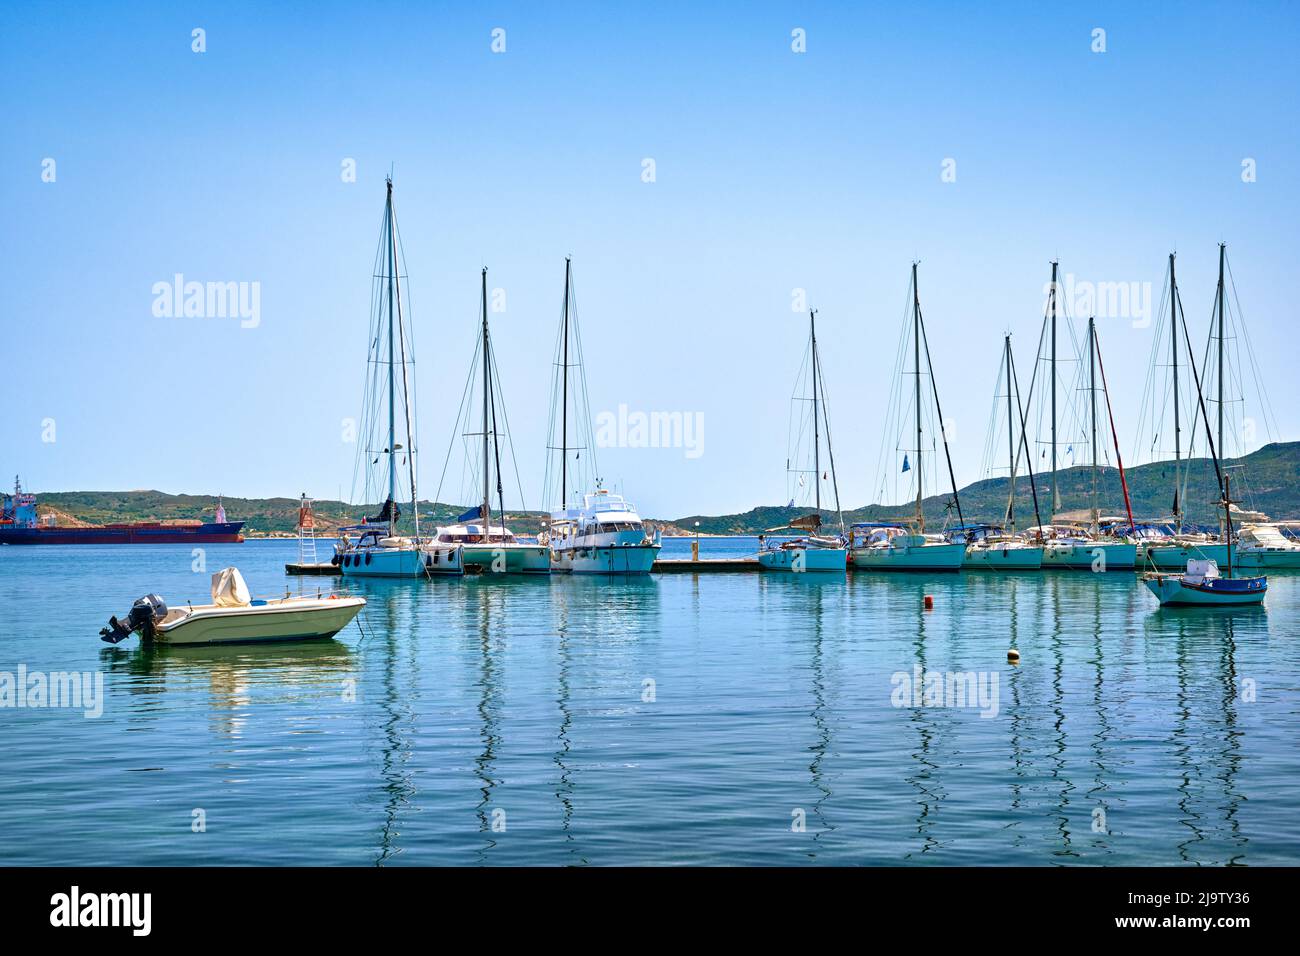 Segelyachten und Boote im Hafen der griechischen Insel, Mittelmeer, klaren blauen Himmel und Meerwasser. Sommerunterhaltung, Spaß beim Segeln, Angeln, Hobby Stockfoto